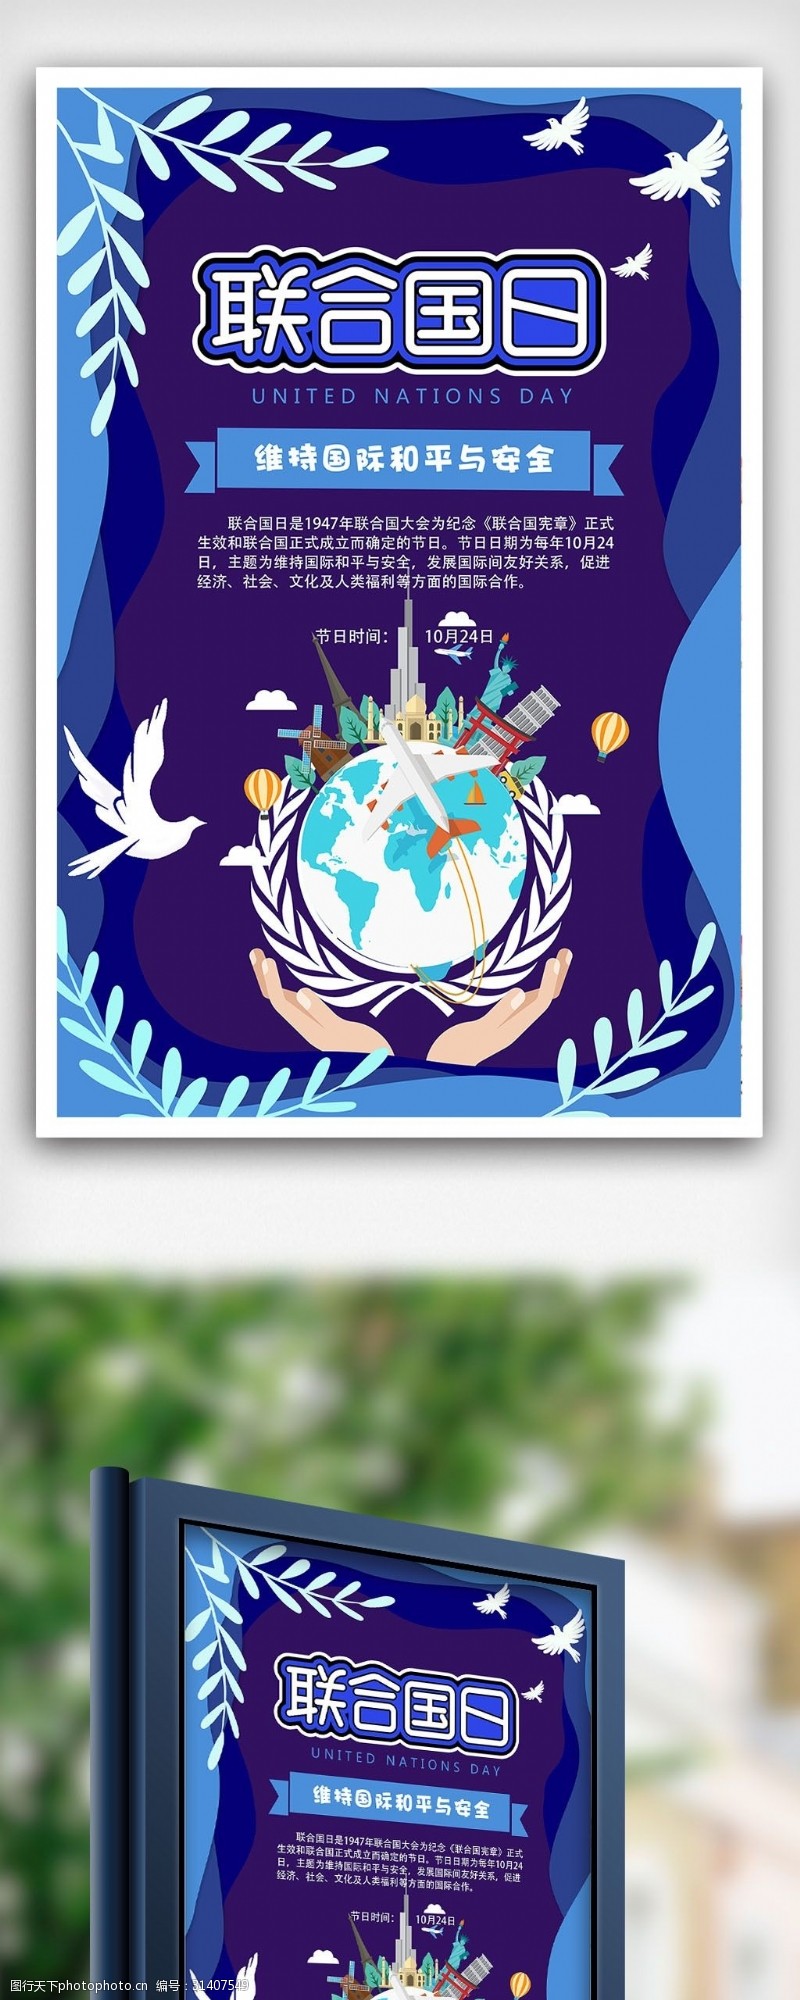 橄榄球海报2018层叠世界和平联合国日